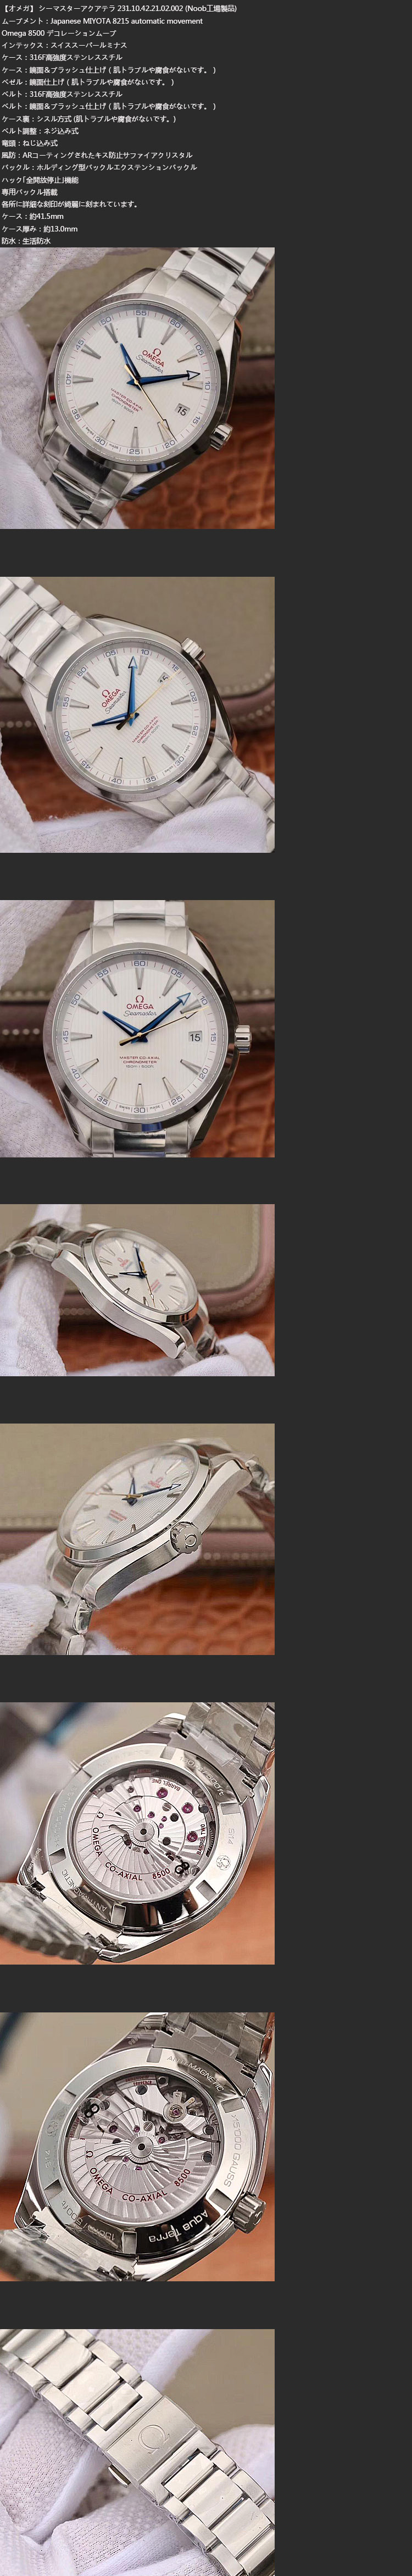 オメガ腕時計の説明